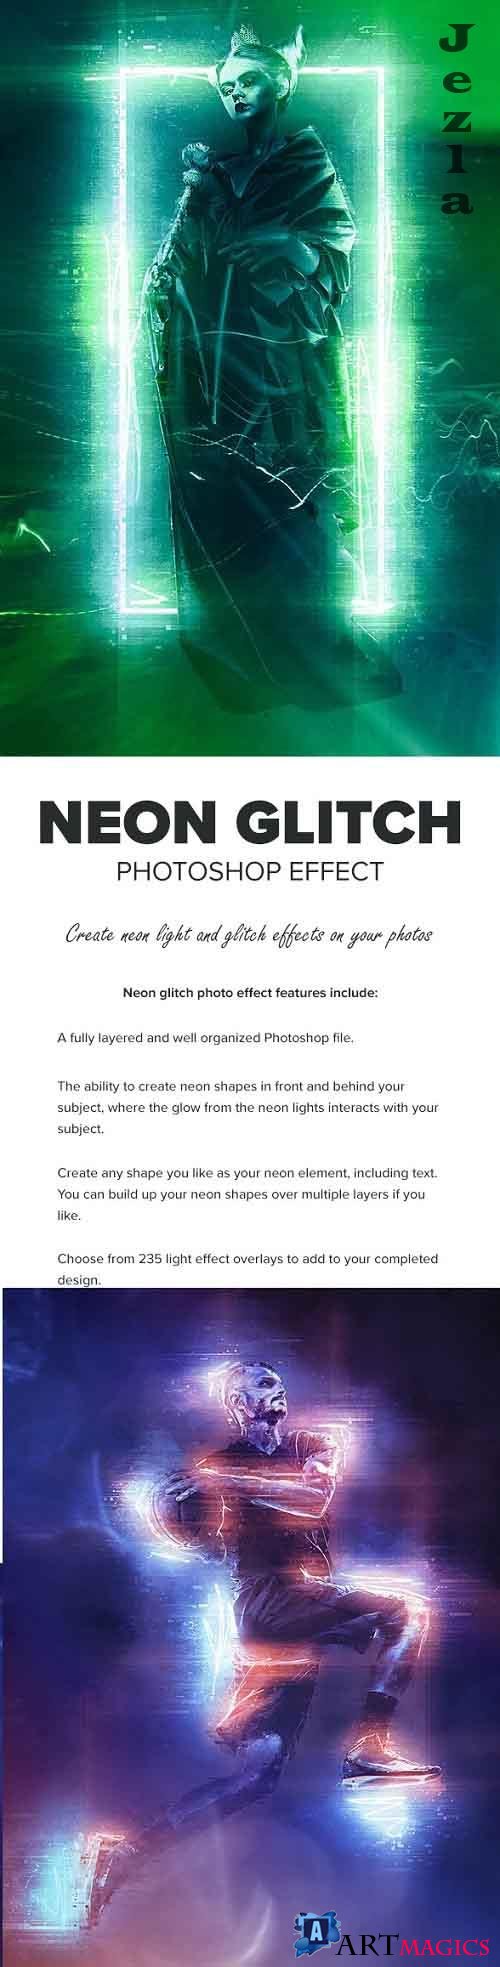 Neon Glitch Photoshop Effect - 27675875